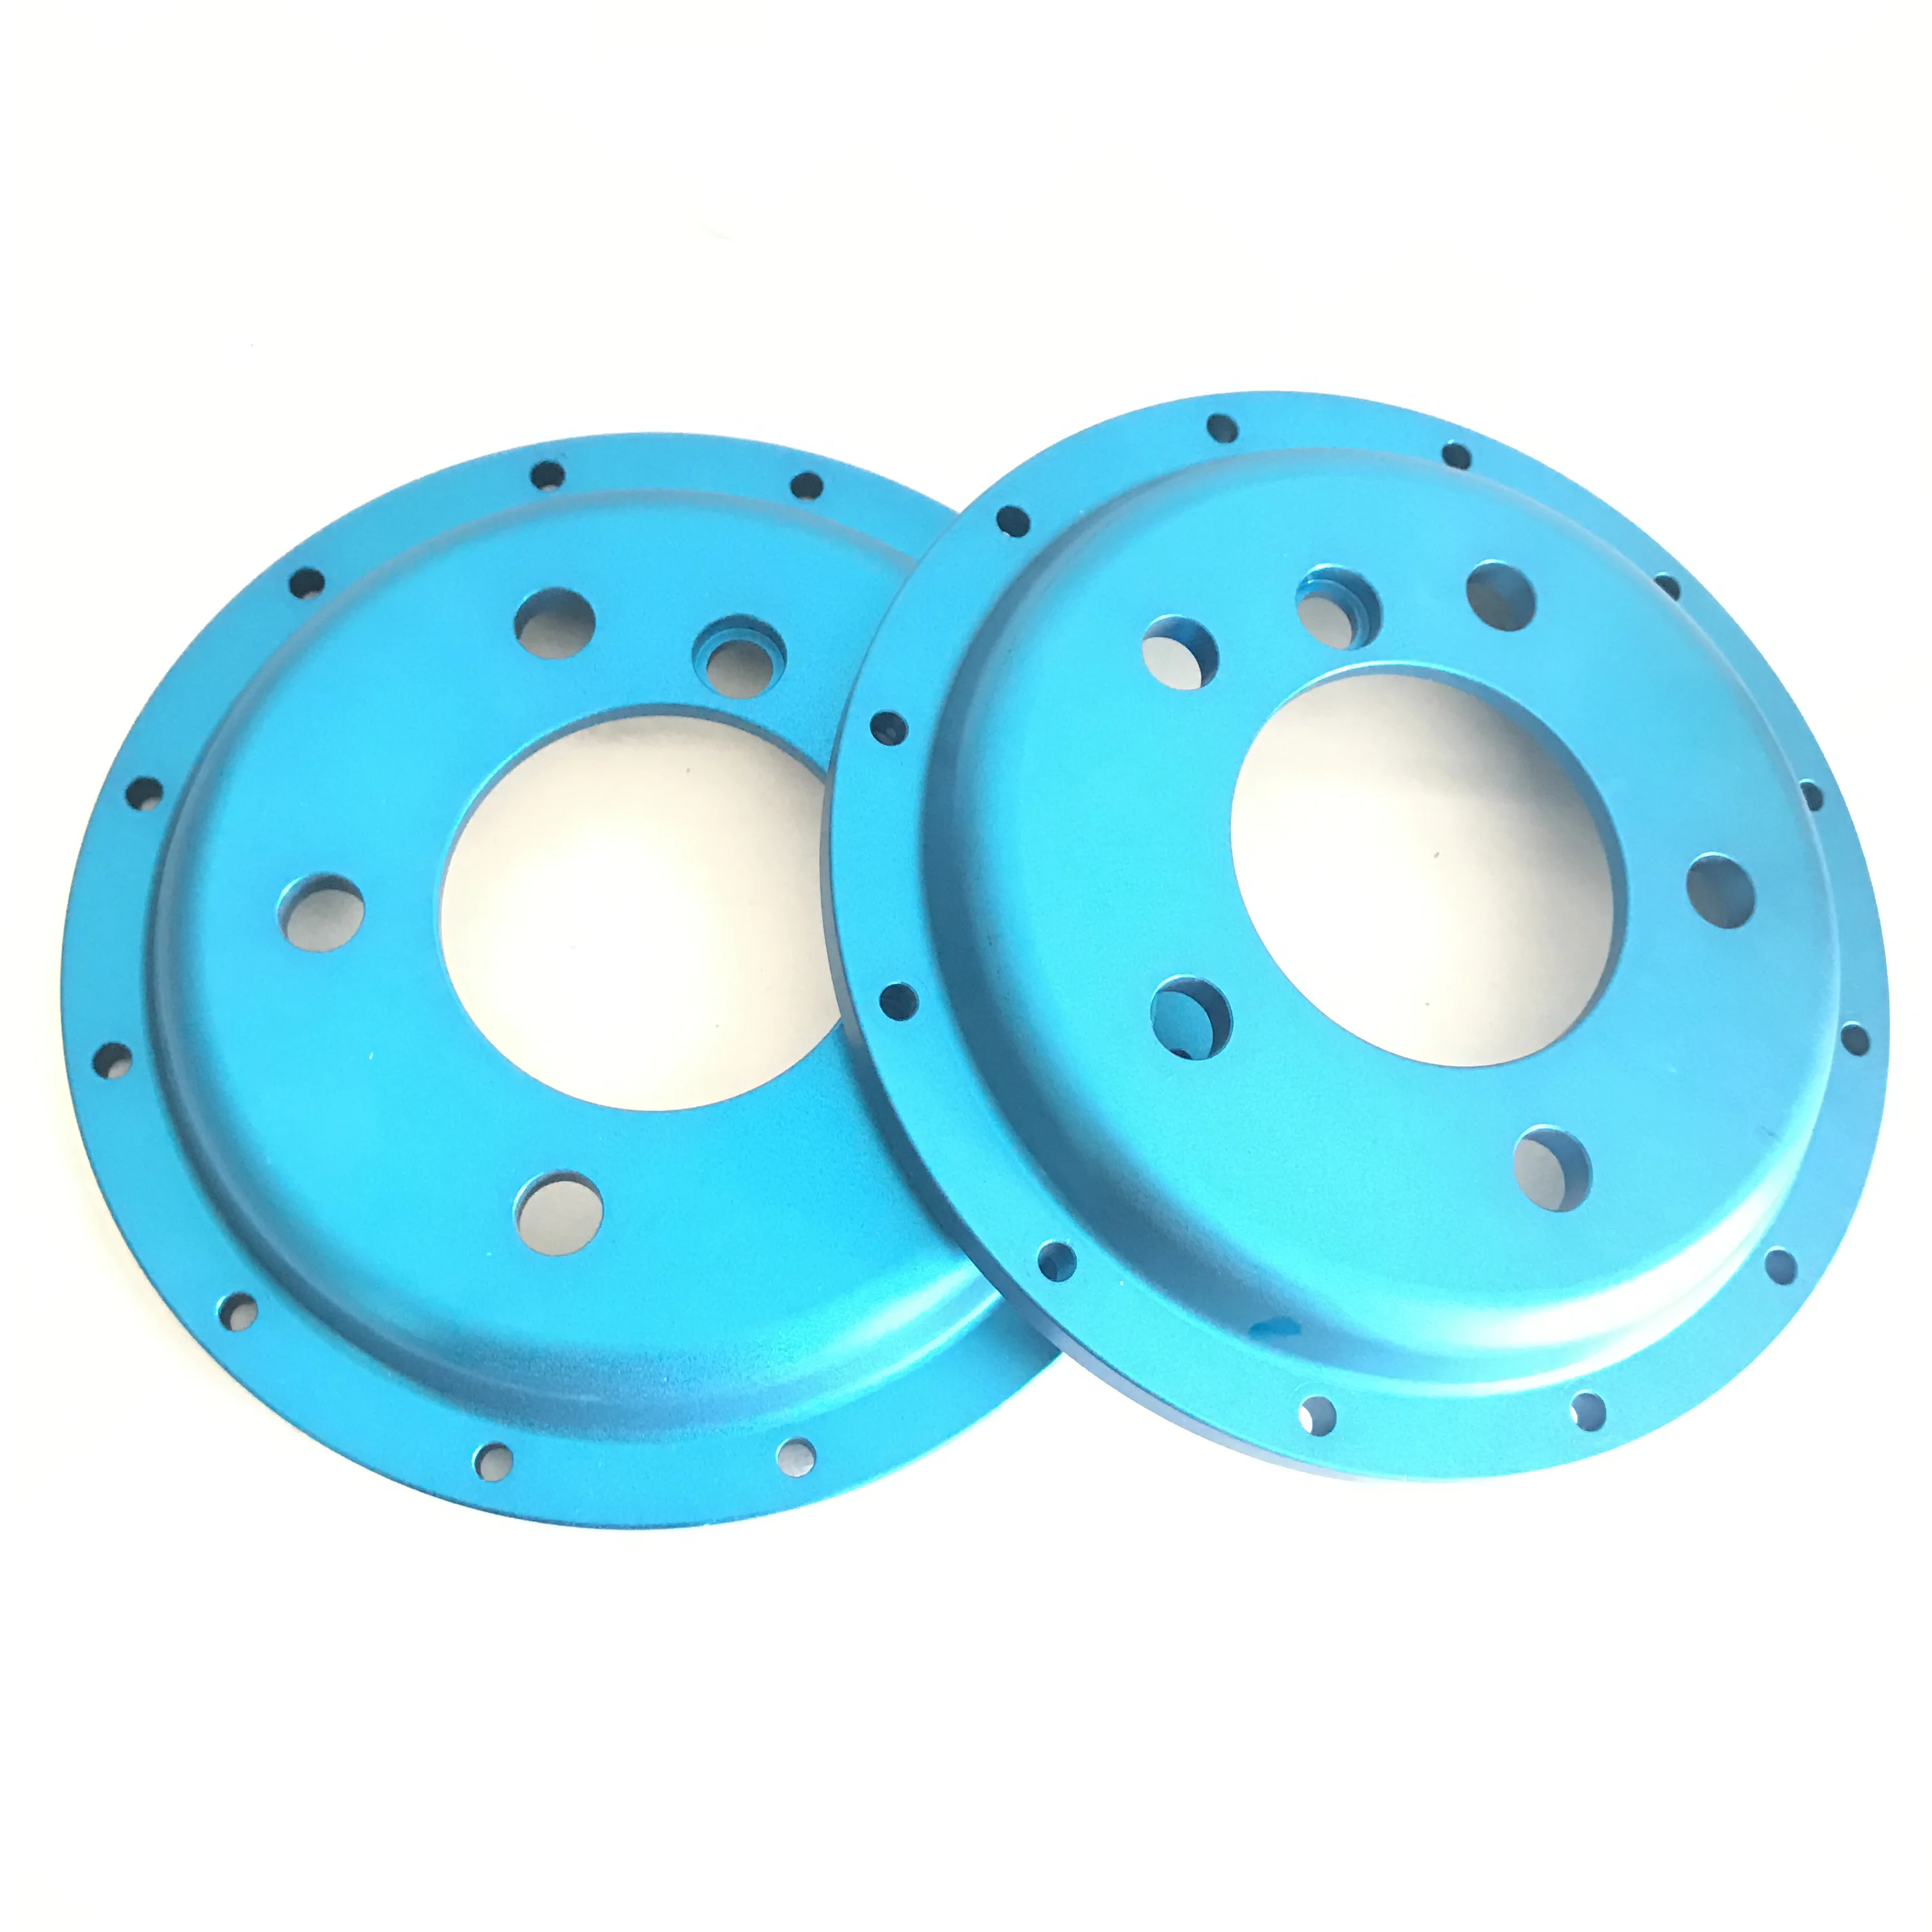 Автомобилните спирачни дискове Jekit, изделия от алуминиева сплав, части за механична обработка на автомобилни спирачни дискове